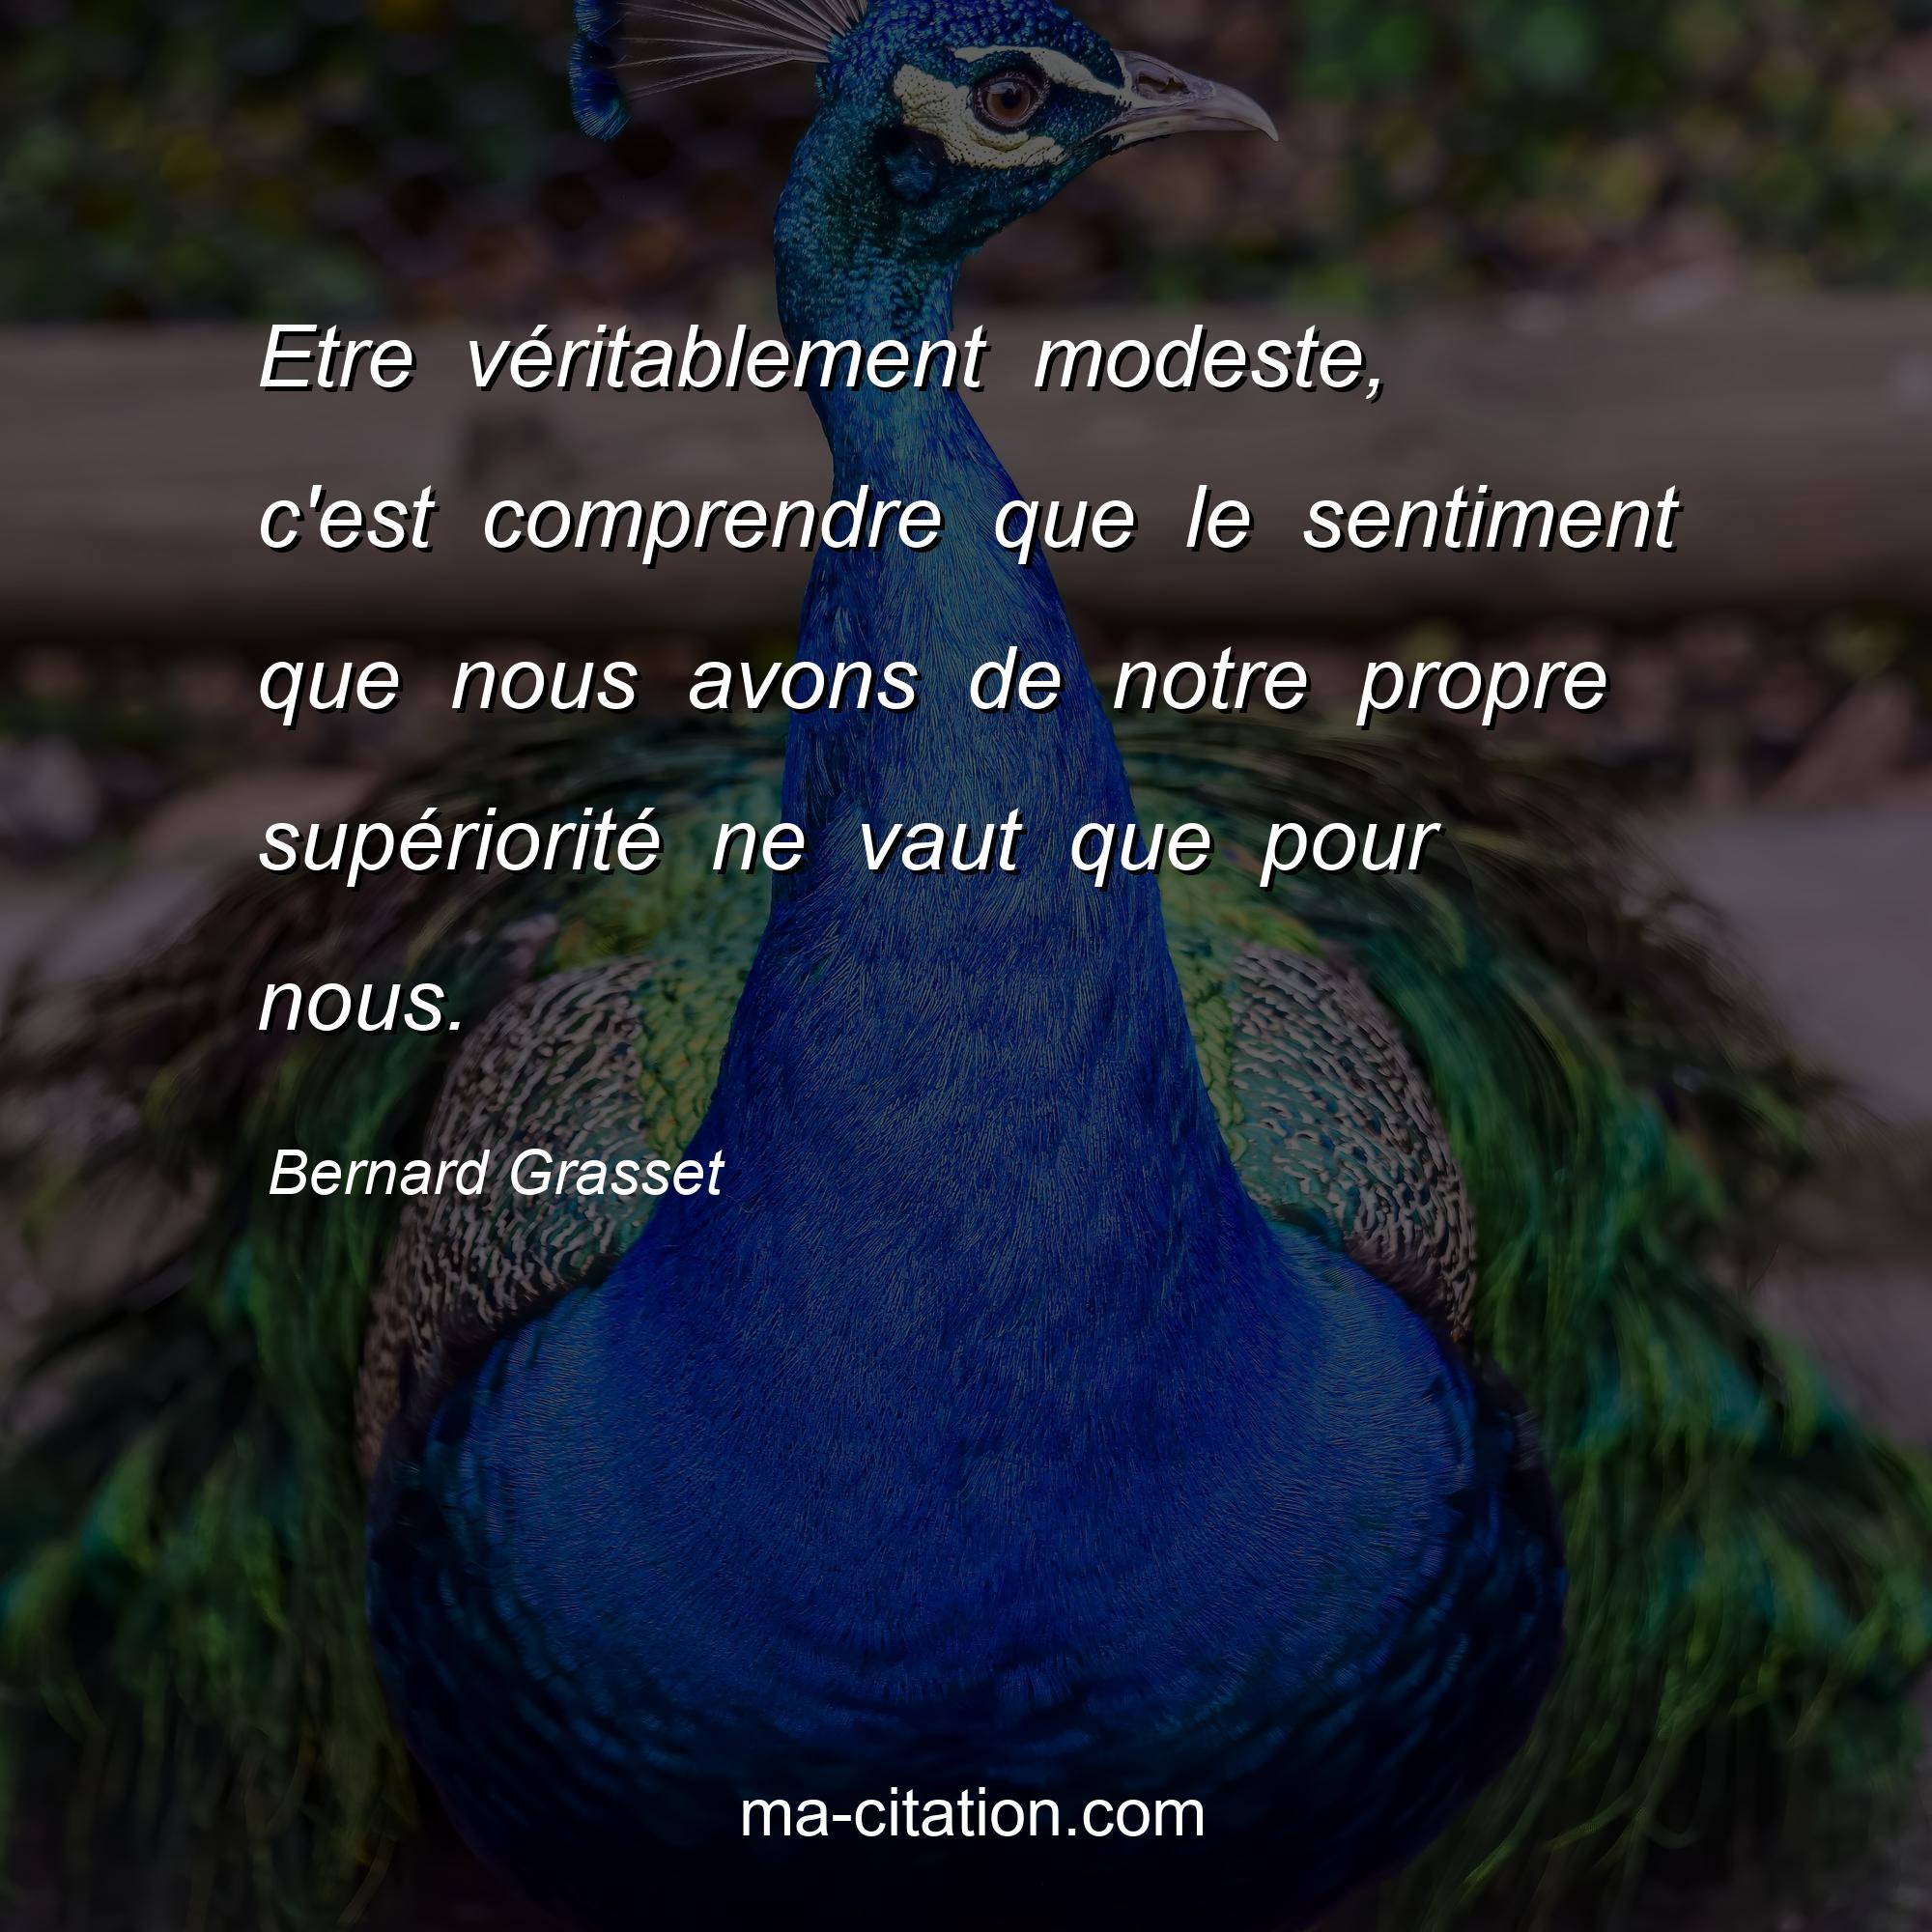 Bernard Grasset : Etre véritablement modeste, c'est comprendre que le sentiment que nous avons de notre propre supériorité ne vaut que pour nous.